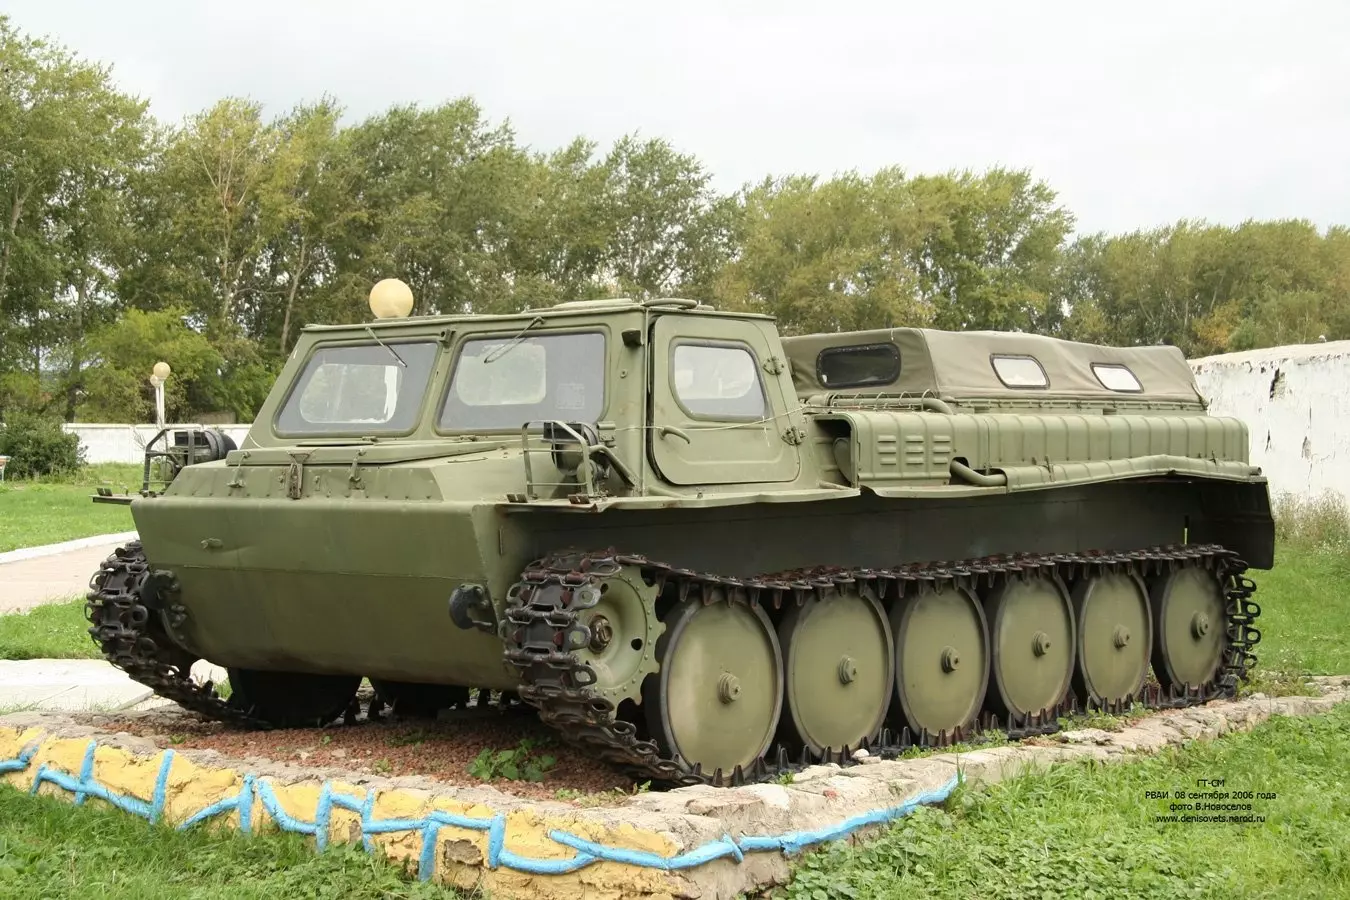 Внешний вид ГАЗ-71